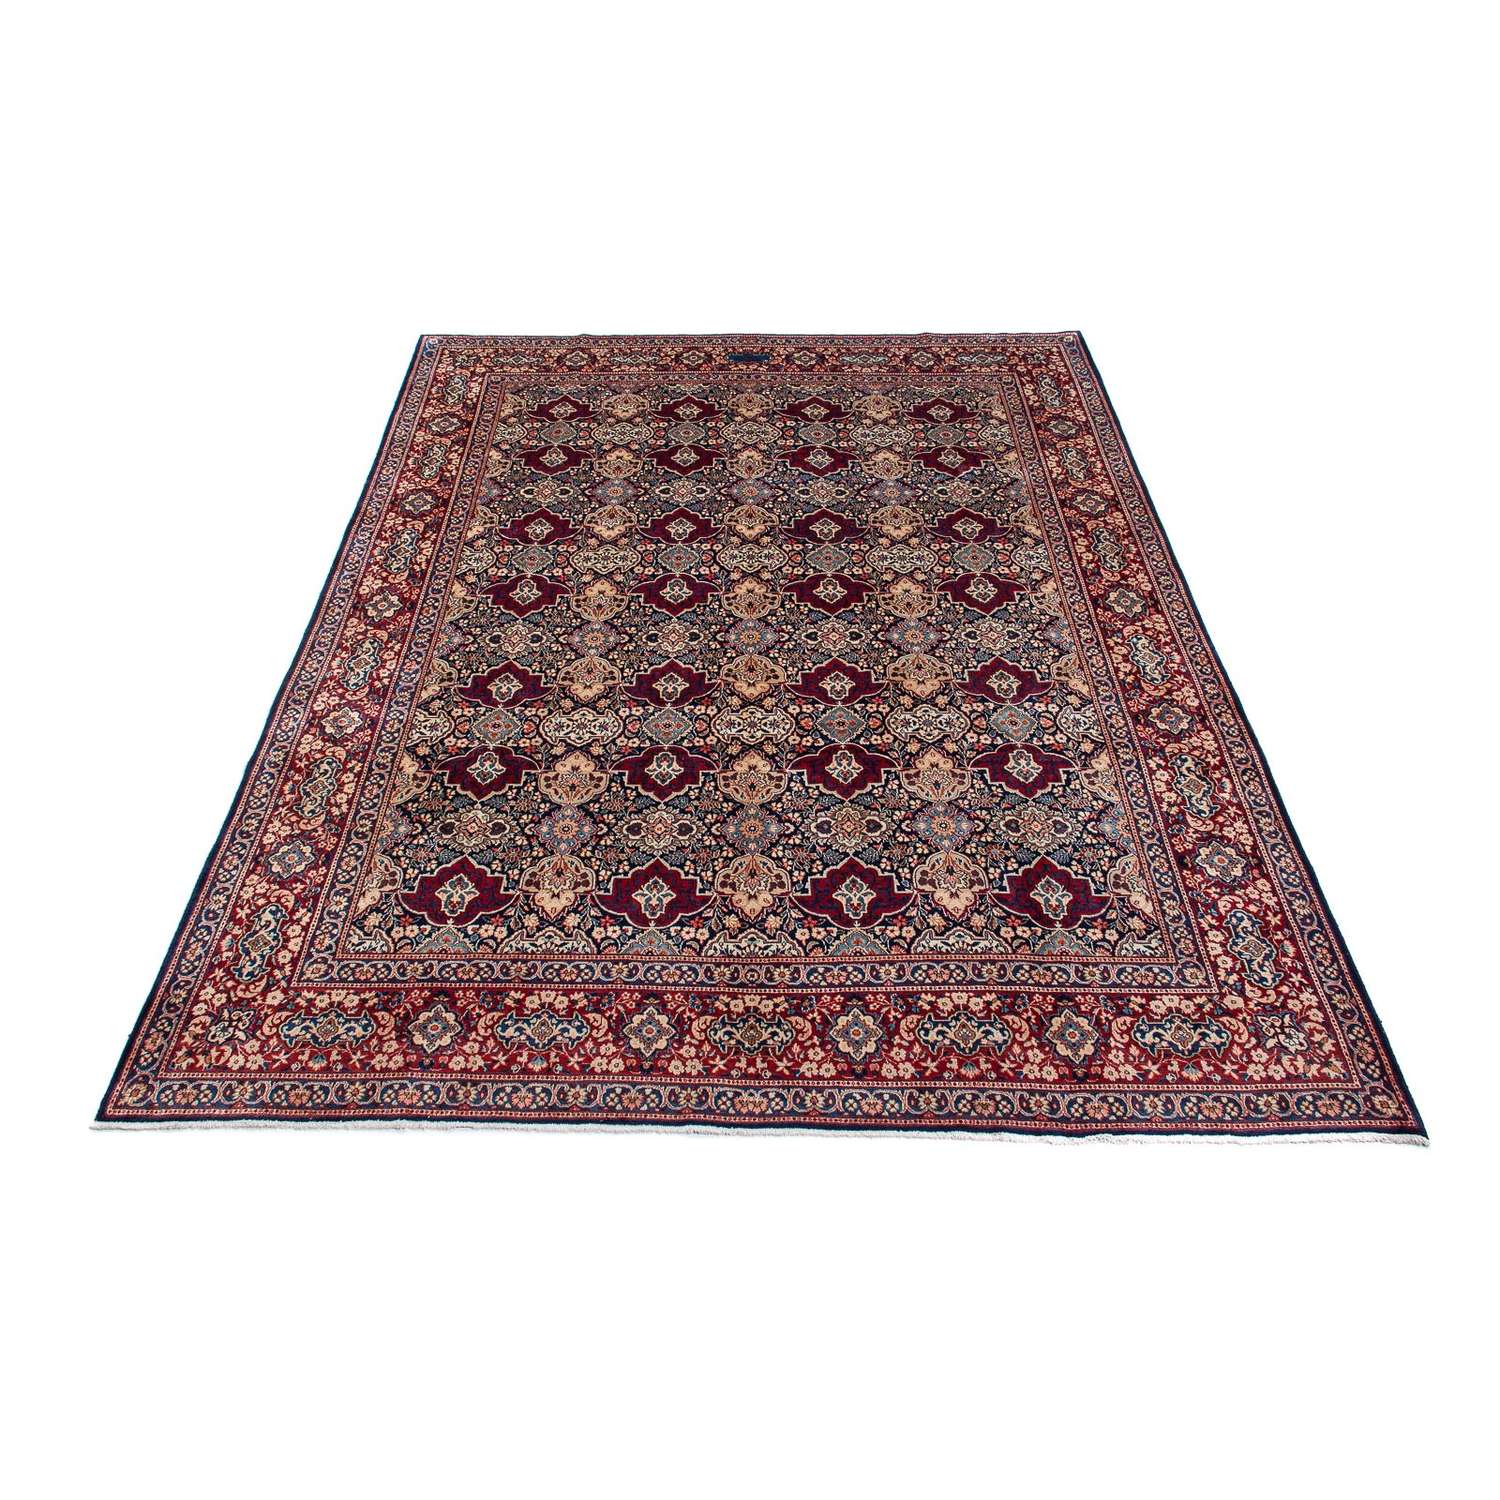 Persisk tæppe - Classic - 393 x 299 cm - mørkerød